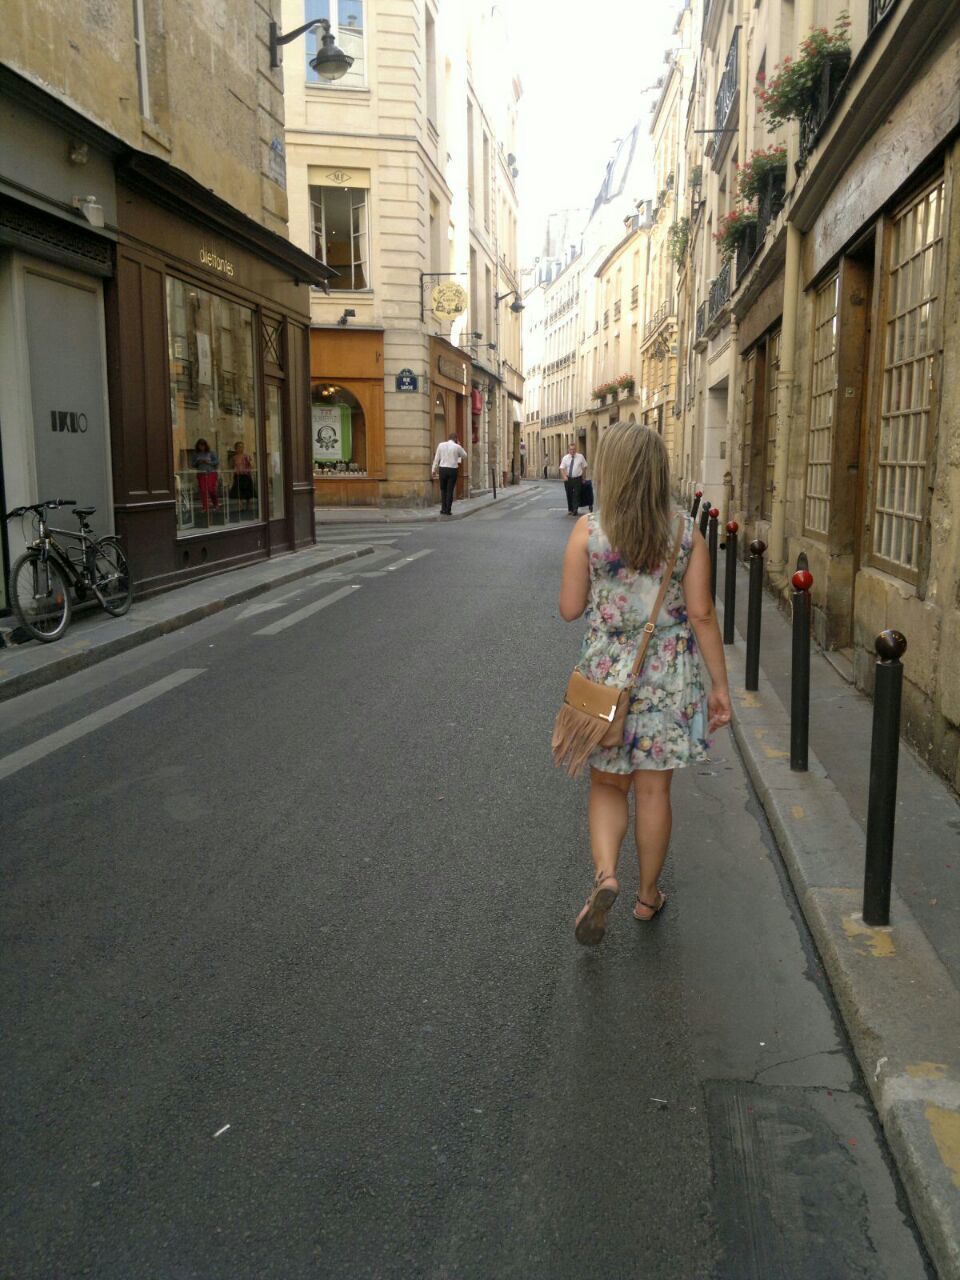 WOMAN WALKING ON STREET